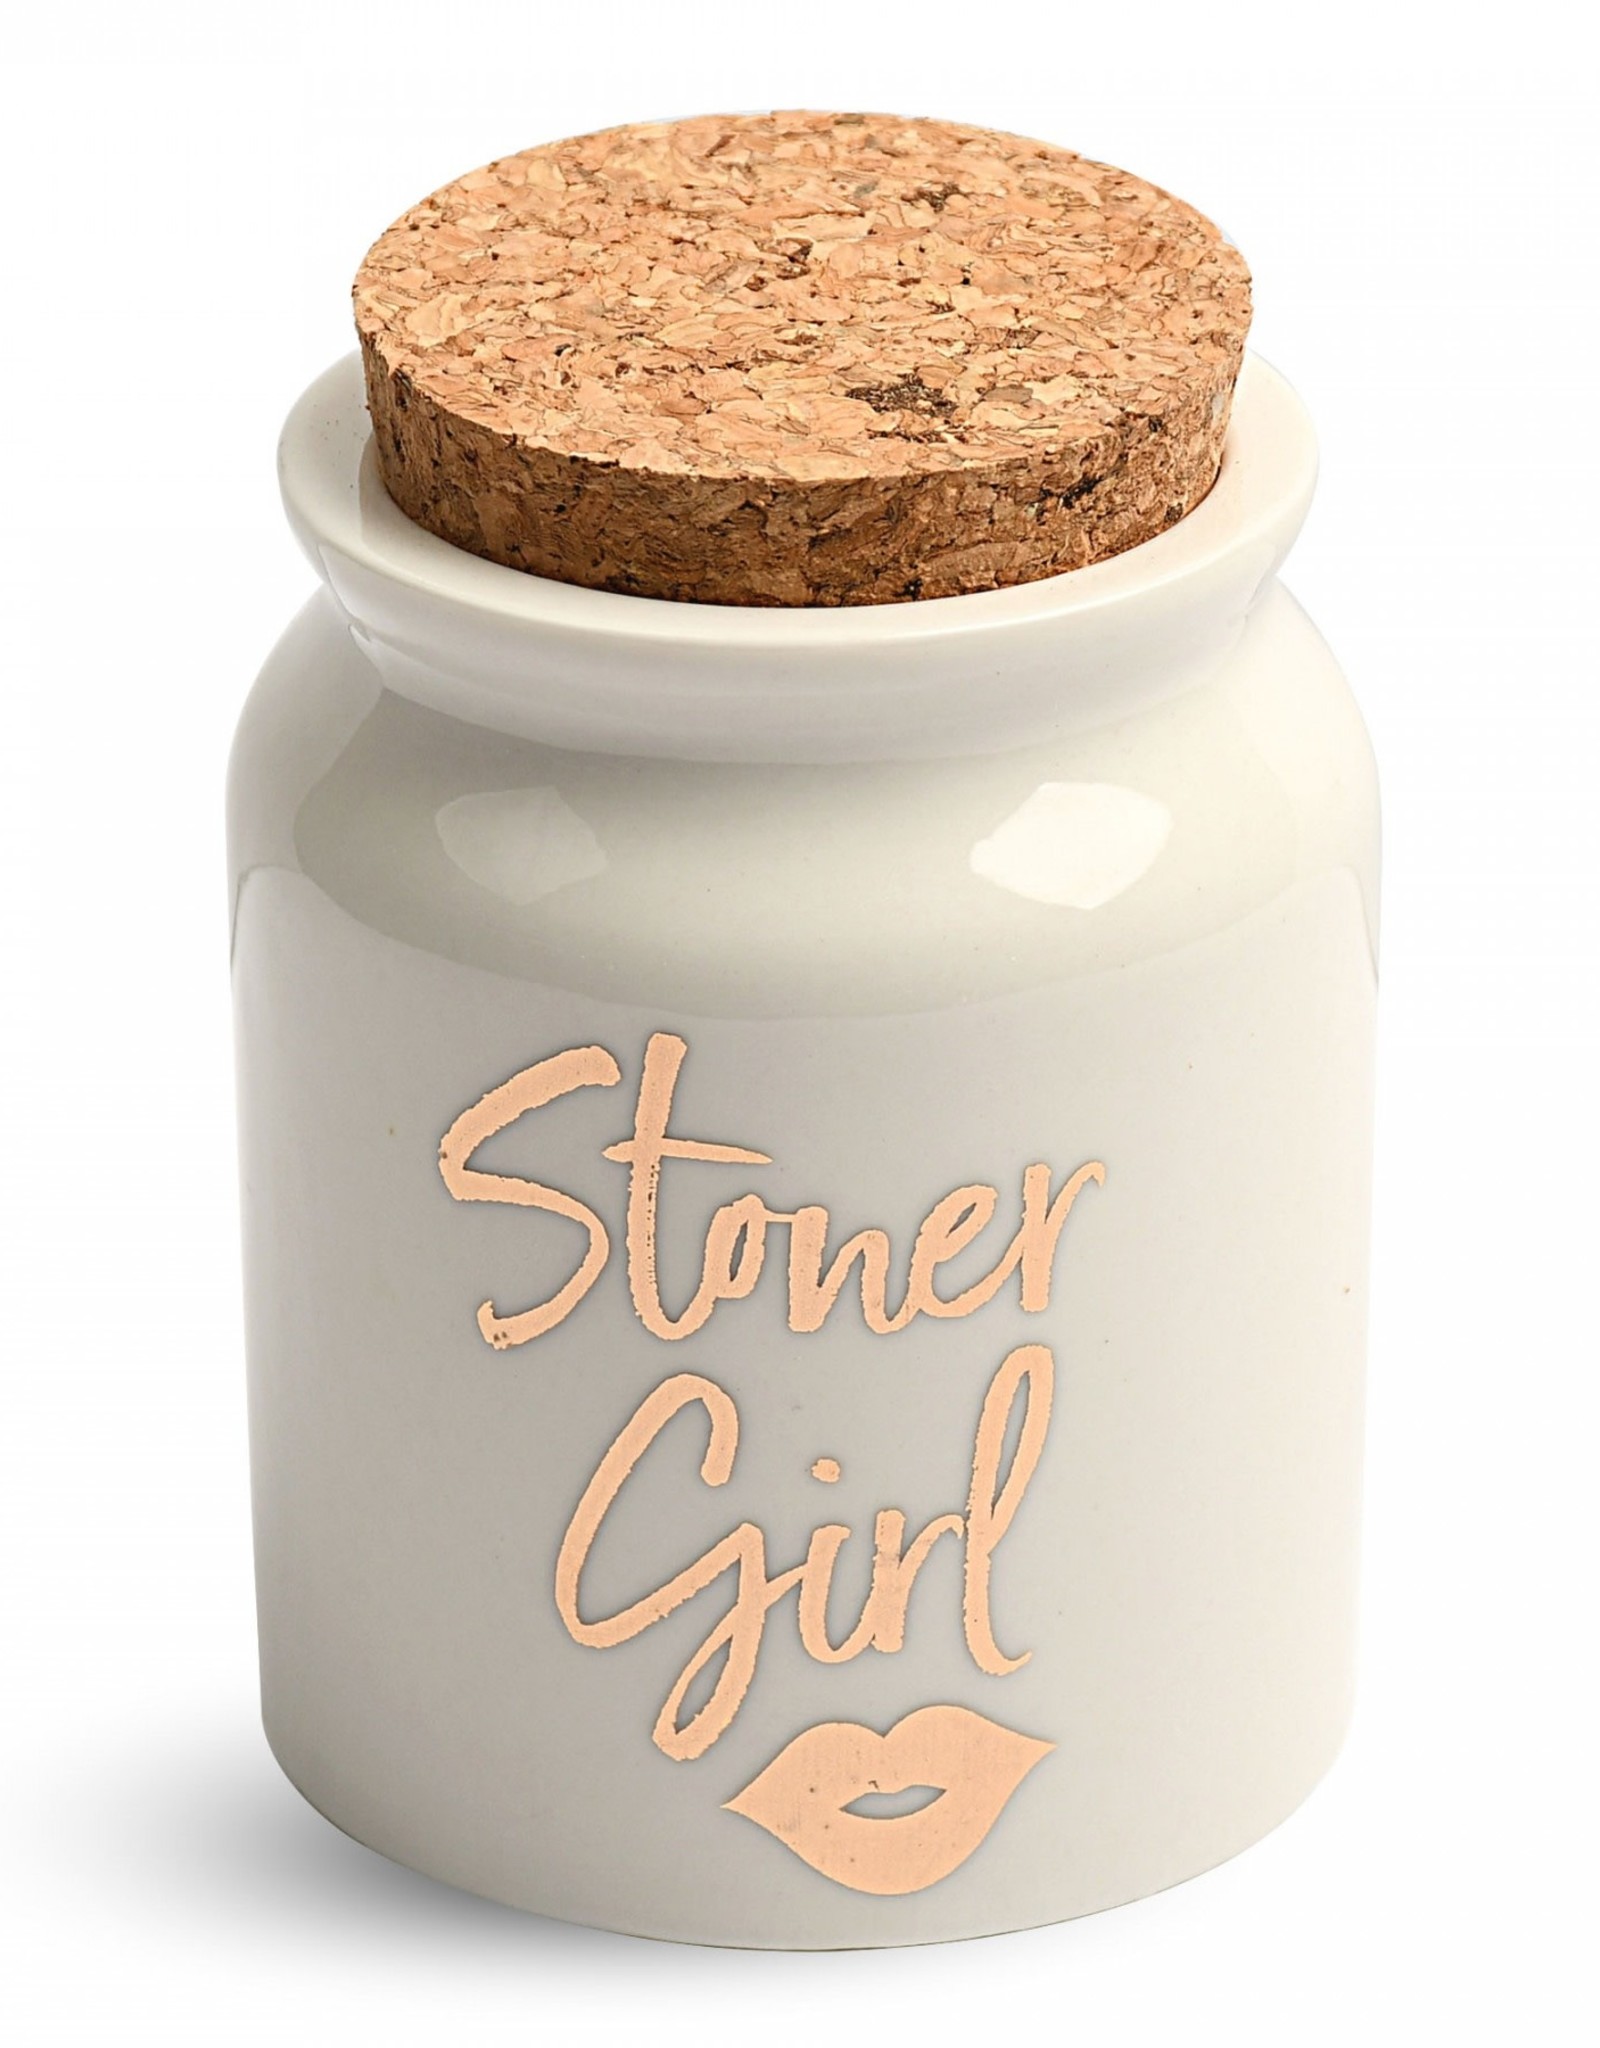 Stoner Girl White Ceramic Stash Jar